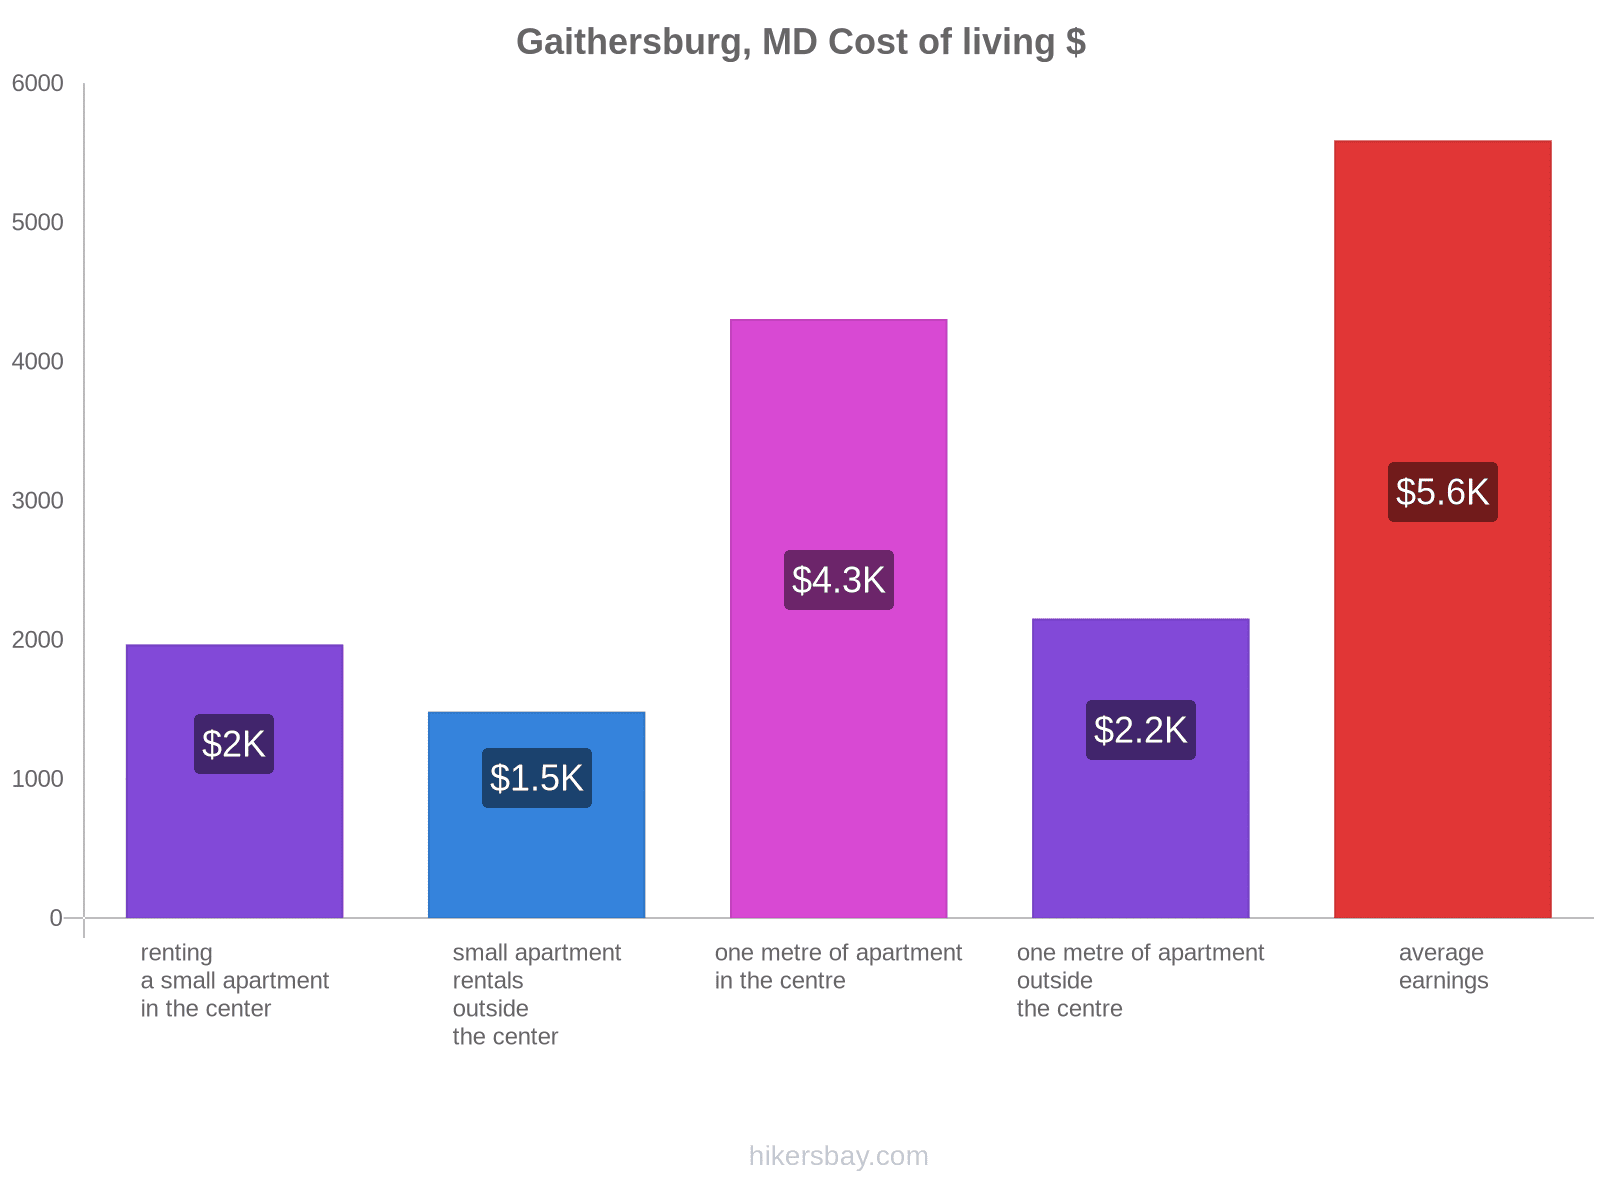 Gaithersburg, MD cost of living hikersbay.com